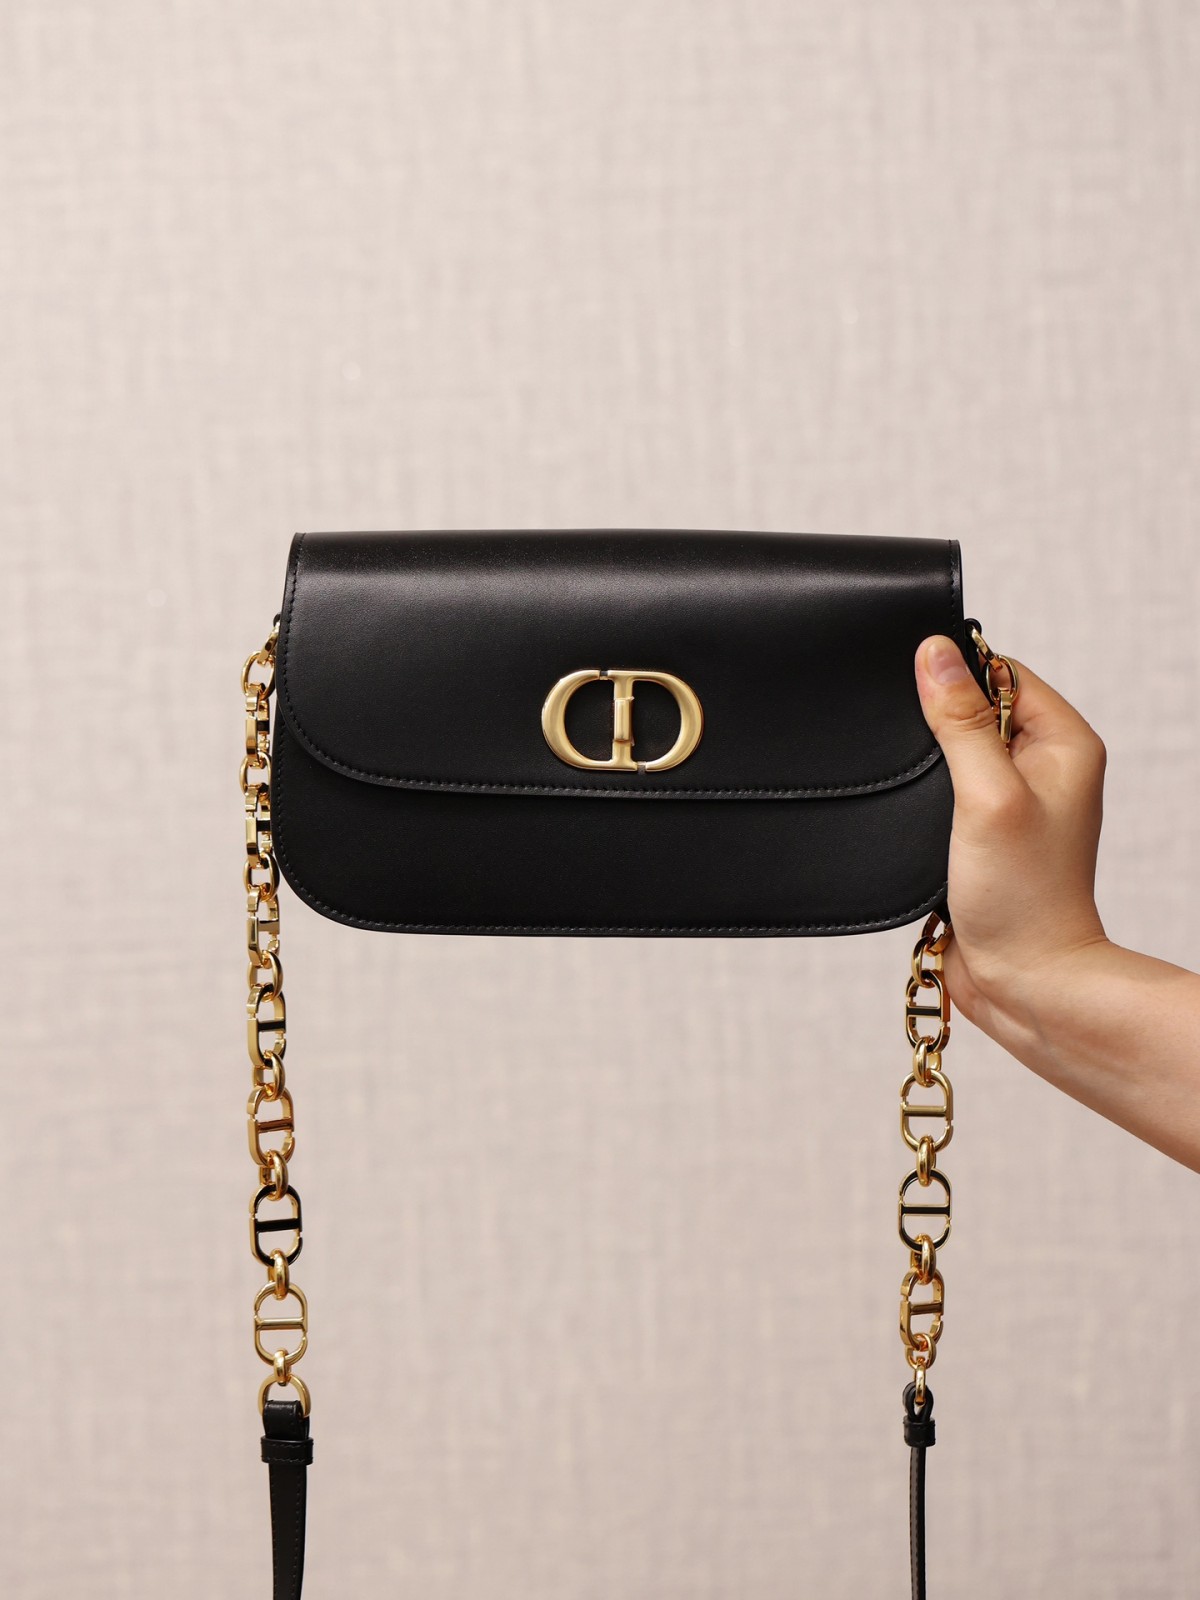 How good quality is a Shebag replica Dior 30 Montaigne Avenue bag? (2023 updated)-Best Quality Fake Louis Vuitton Bag Online Store, Replica designer bag ru